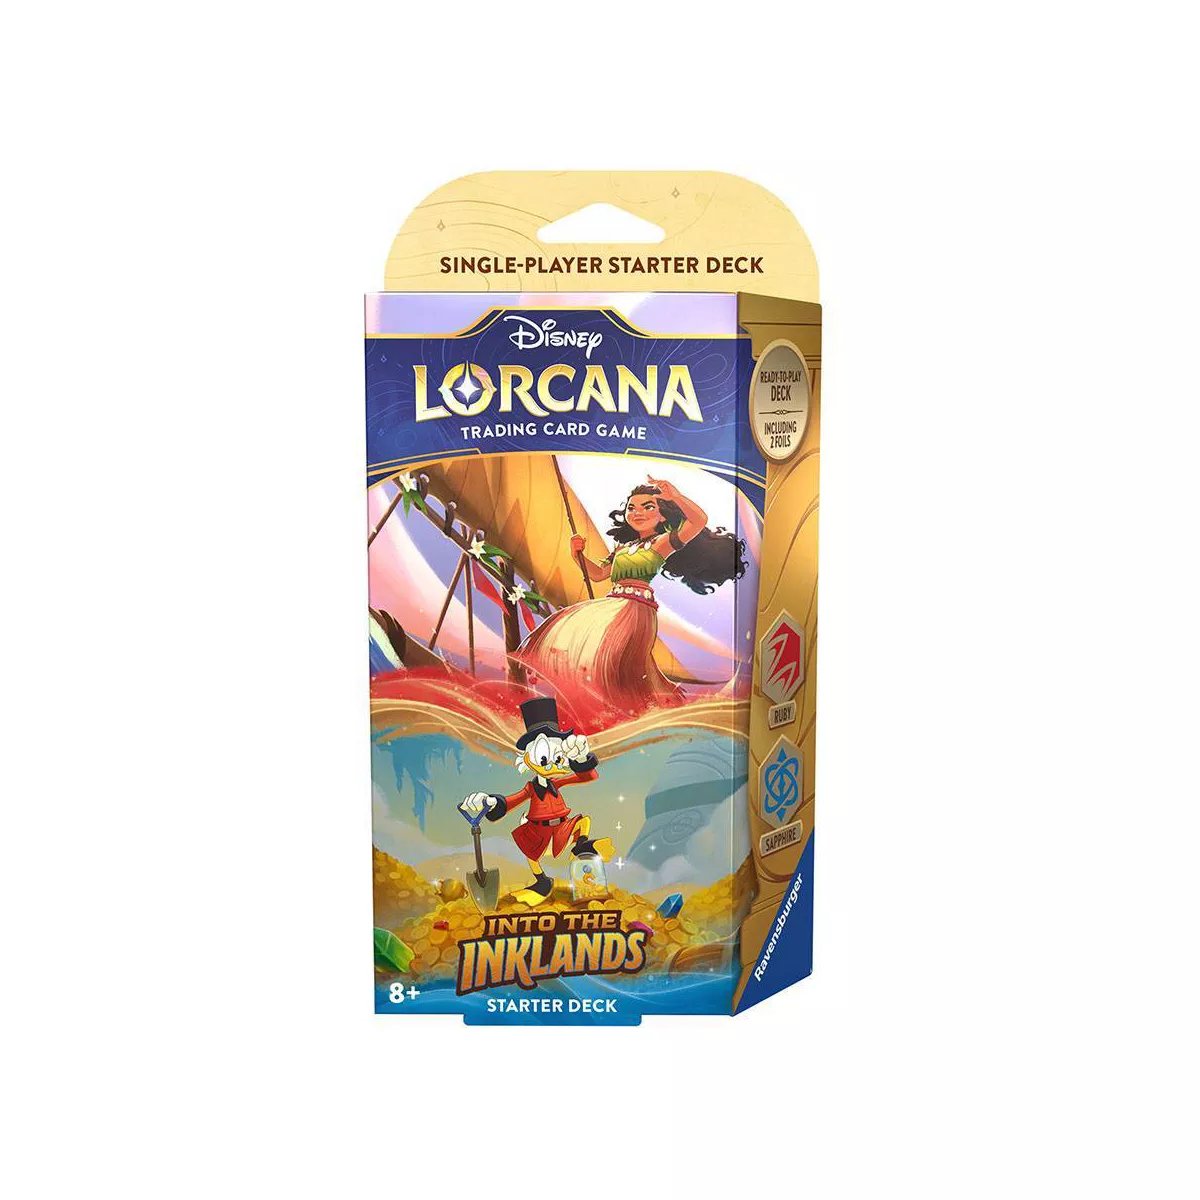 Disney Lorcana TCG: El formato multijugador del juego se fortalece con "Into the Inklands" 8